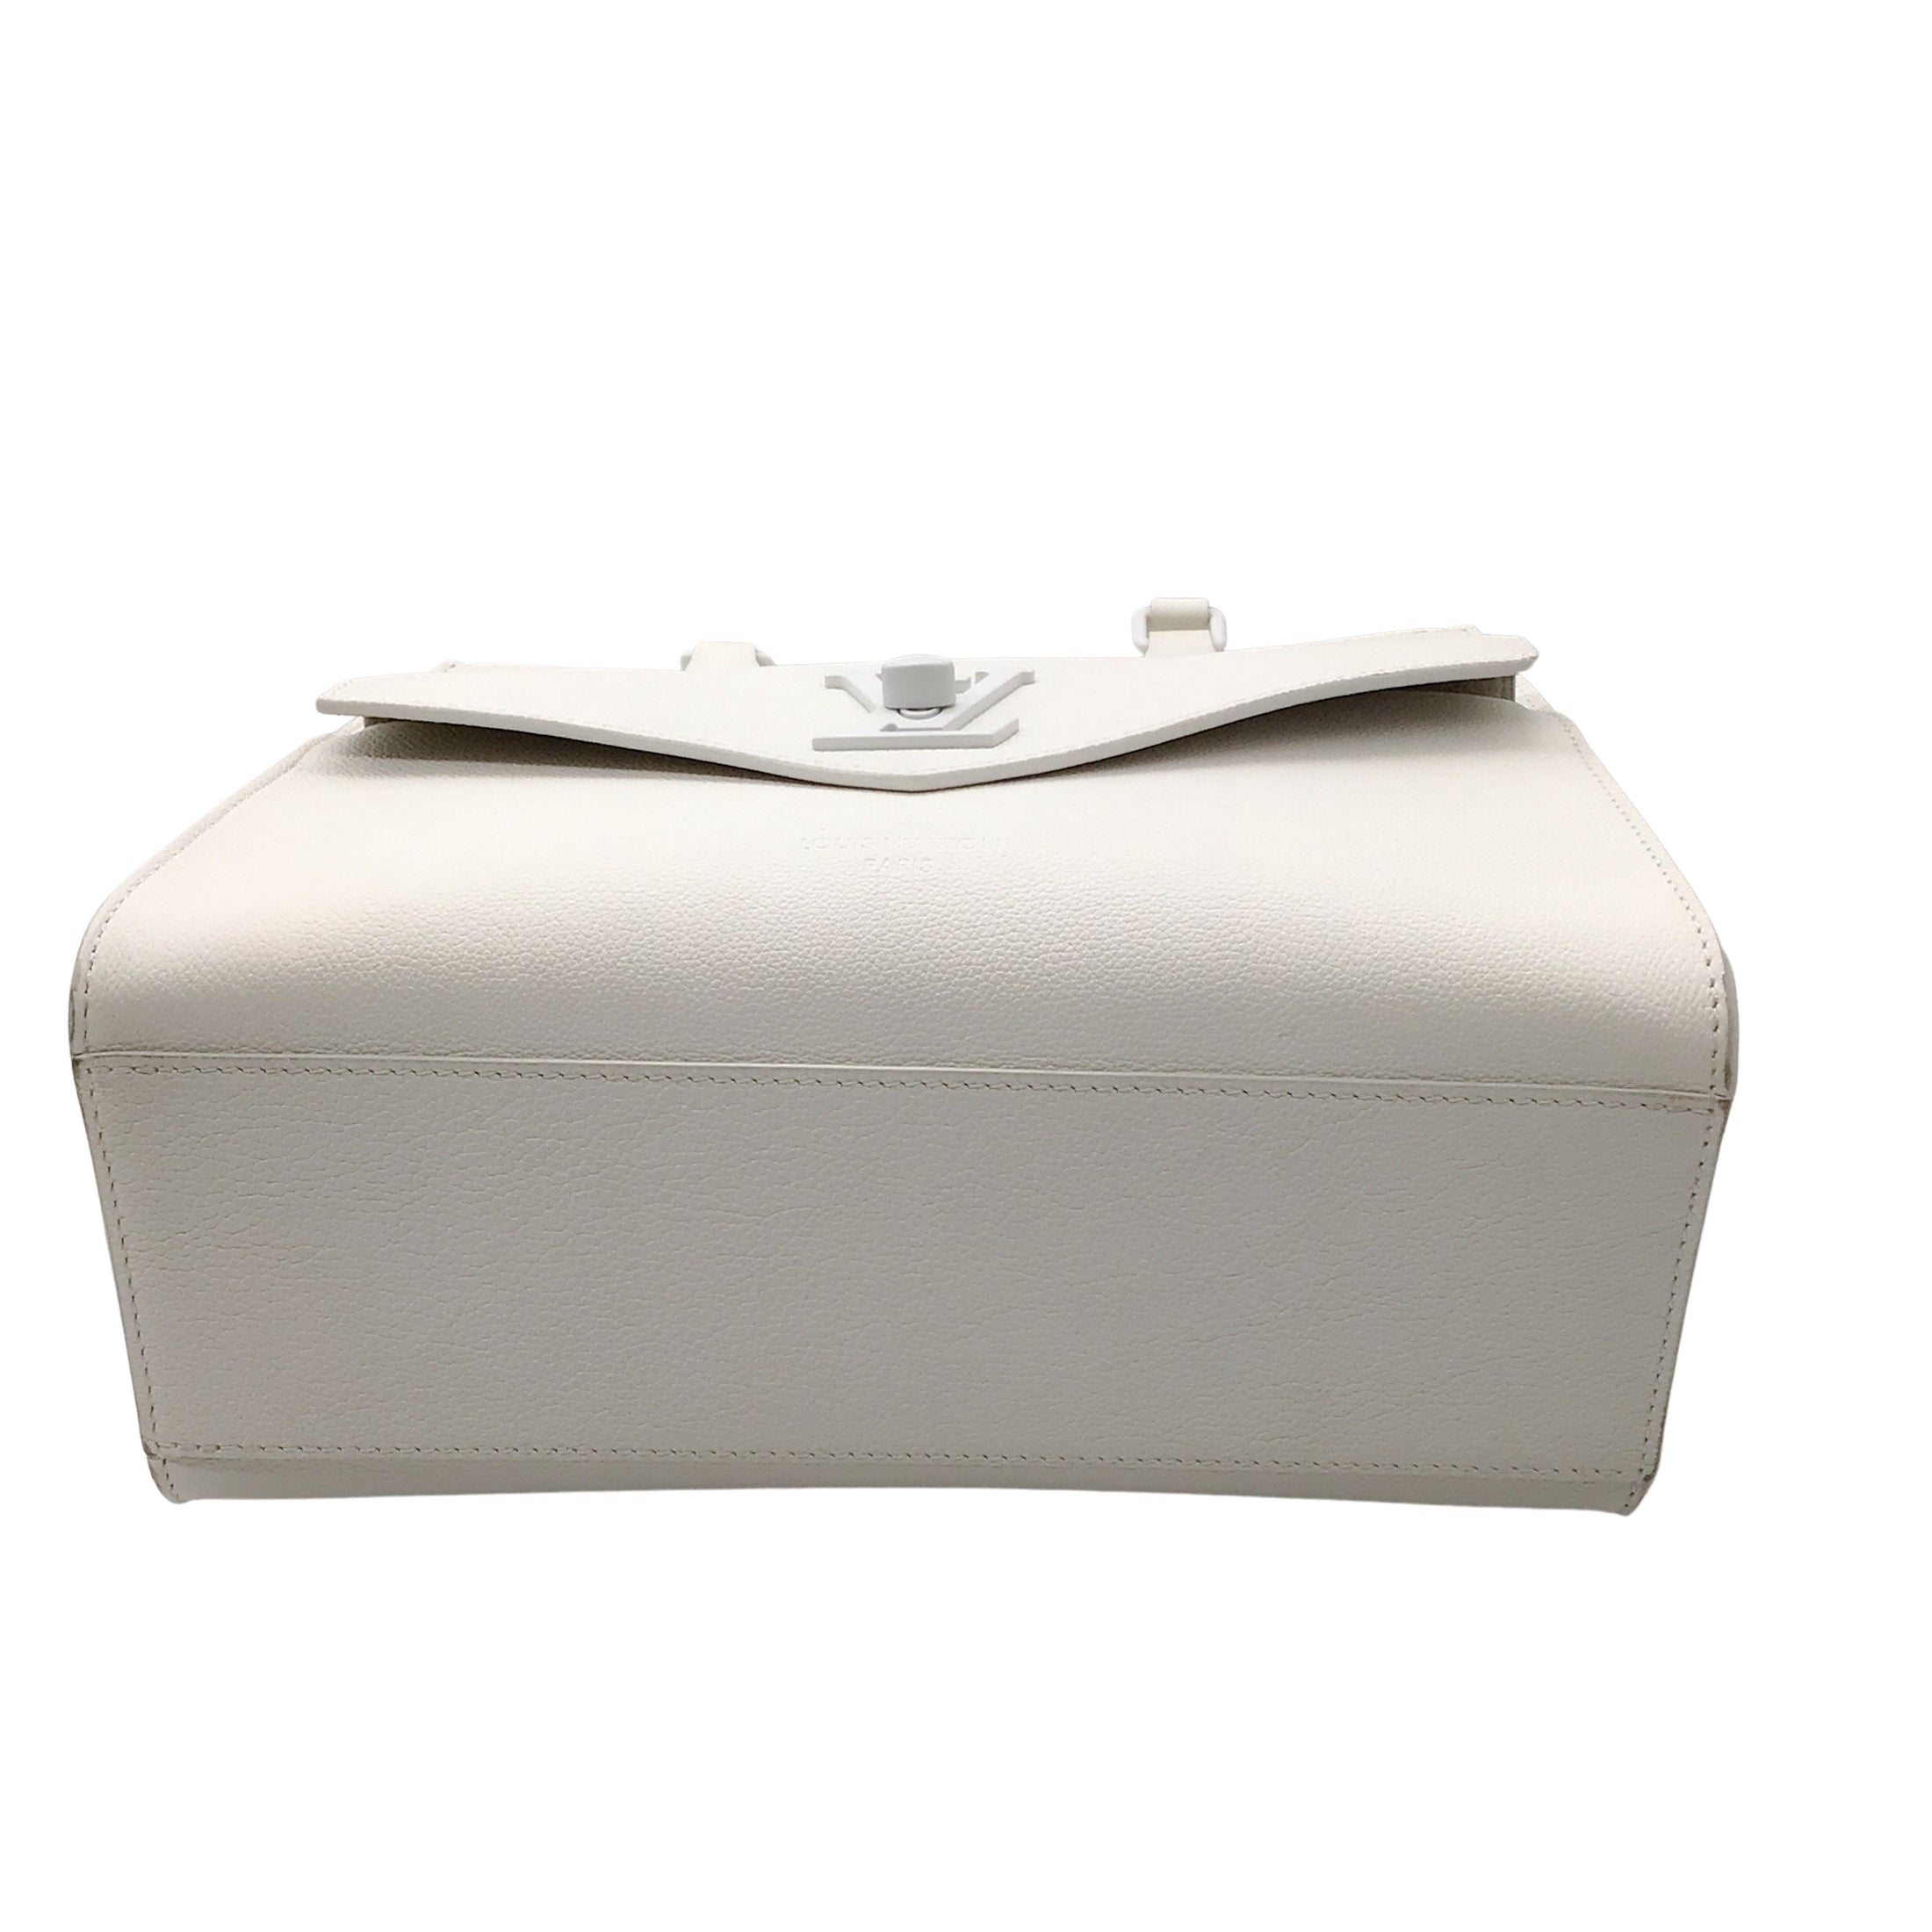 Louis Vuitton White Lockme Monochrome PM Leather Tote Handbag